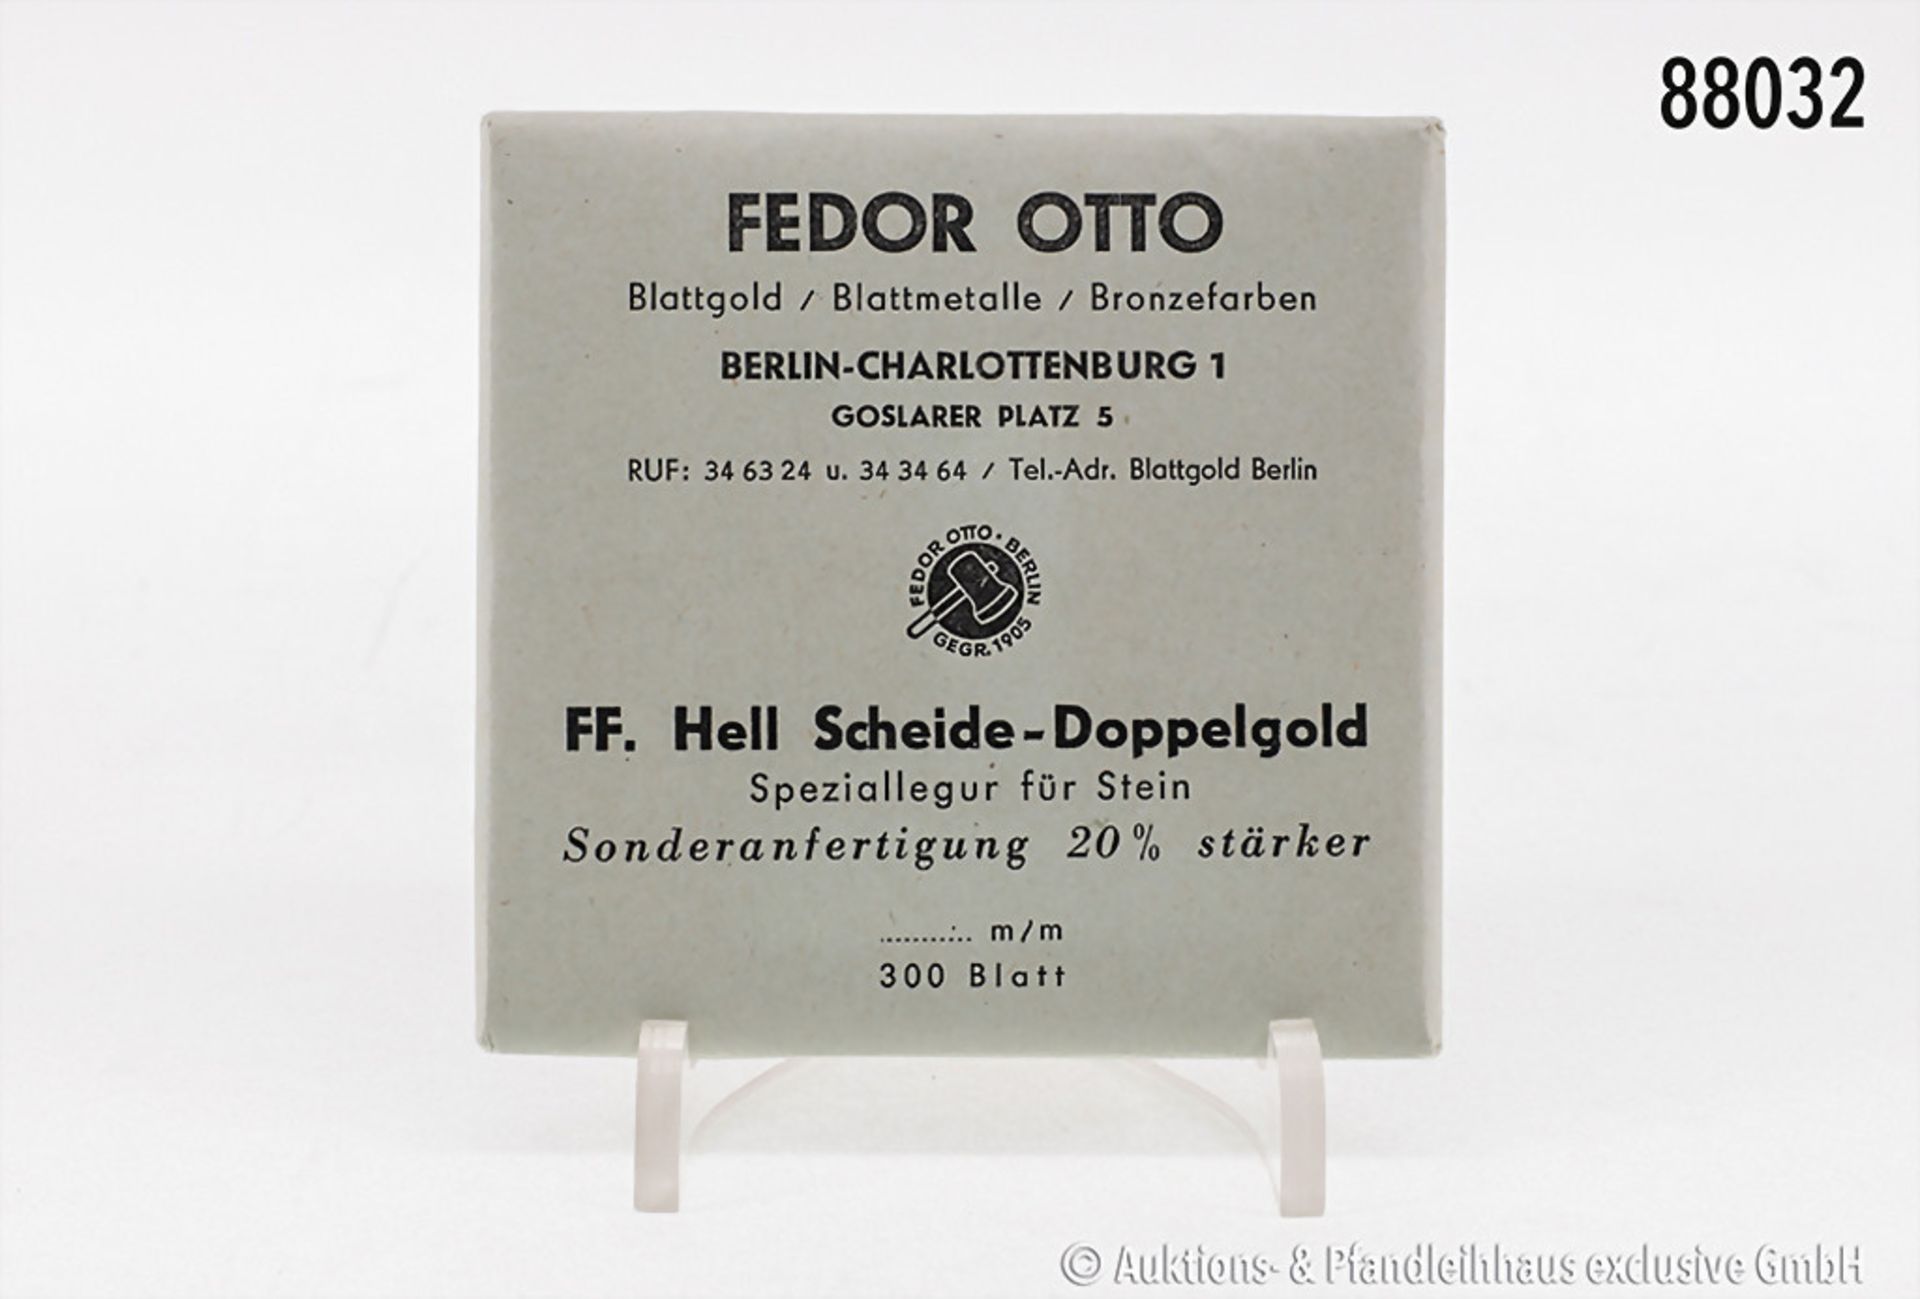 1 Packung Blattgold, 300 Blatt, Fa. Fedor Otto, Berlin, Speziallegur für Stein, ...